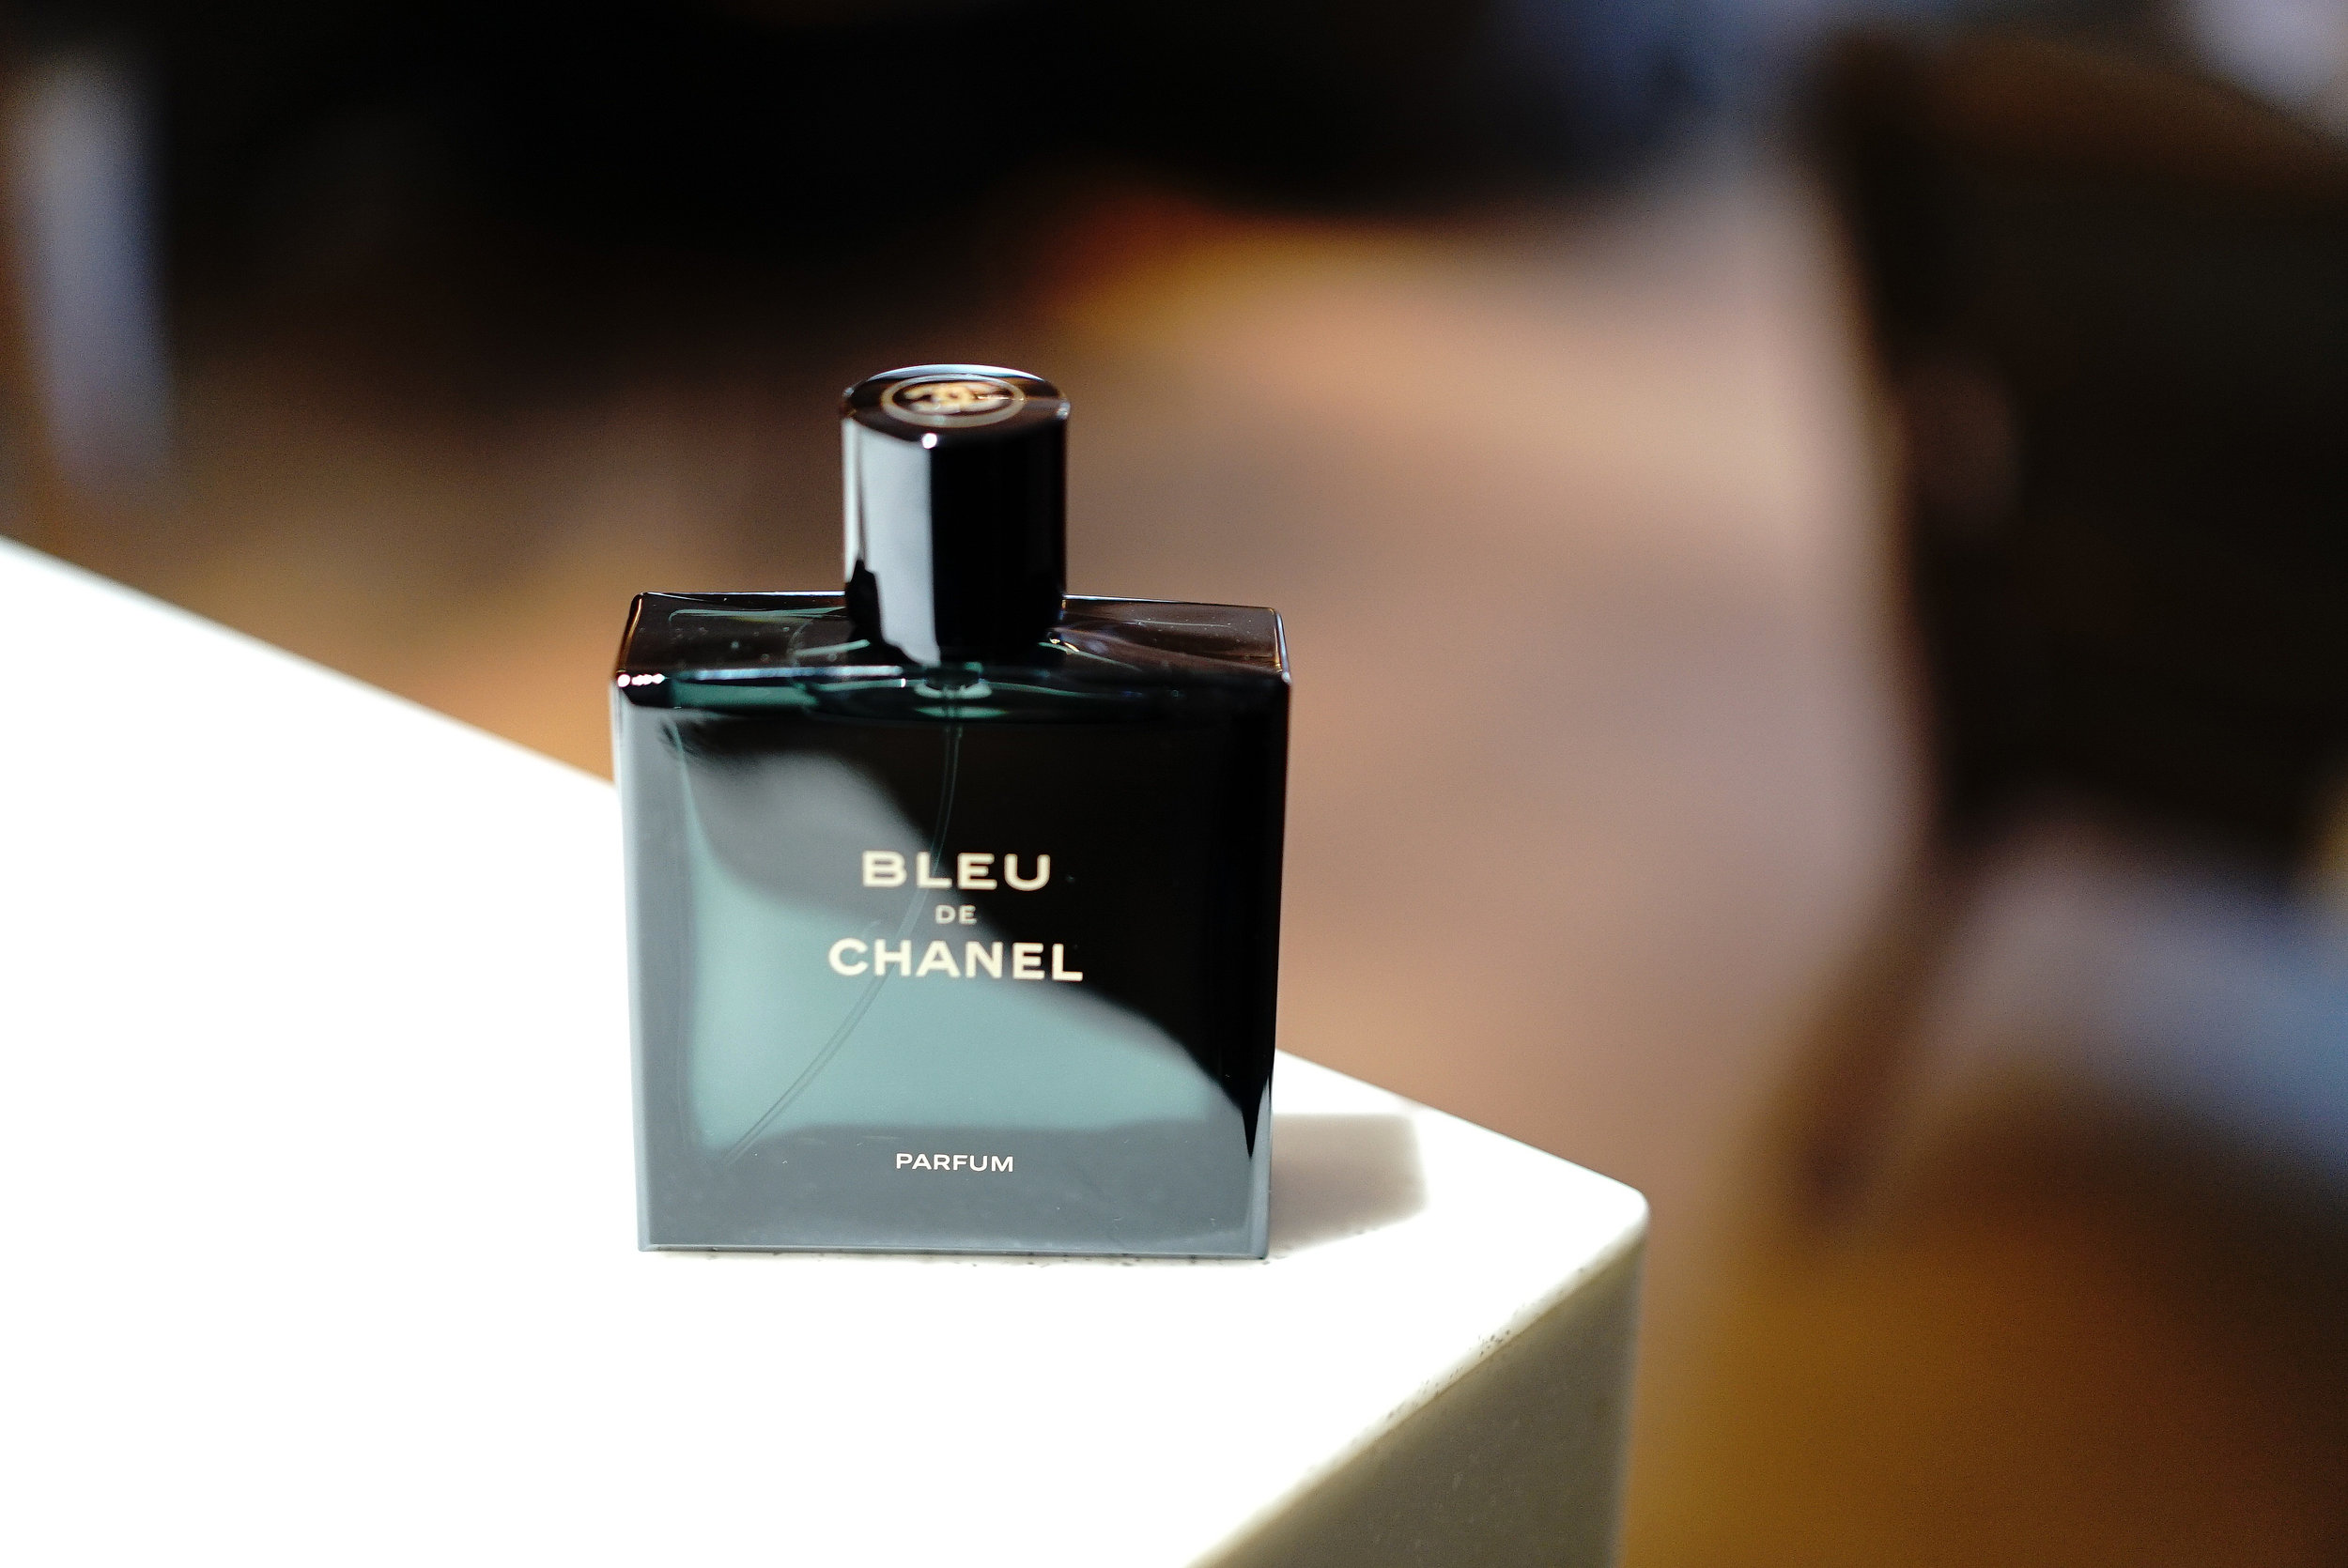 2018 Bleu de Chanel Parfum | Fragrance Review — MEN'S STYLE BLOG